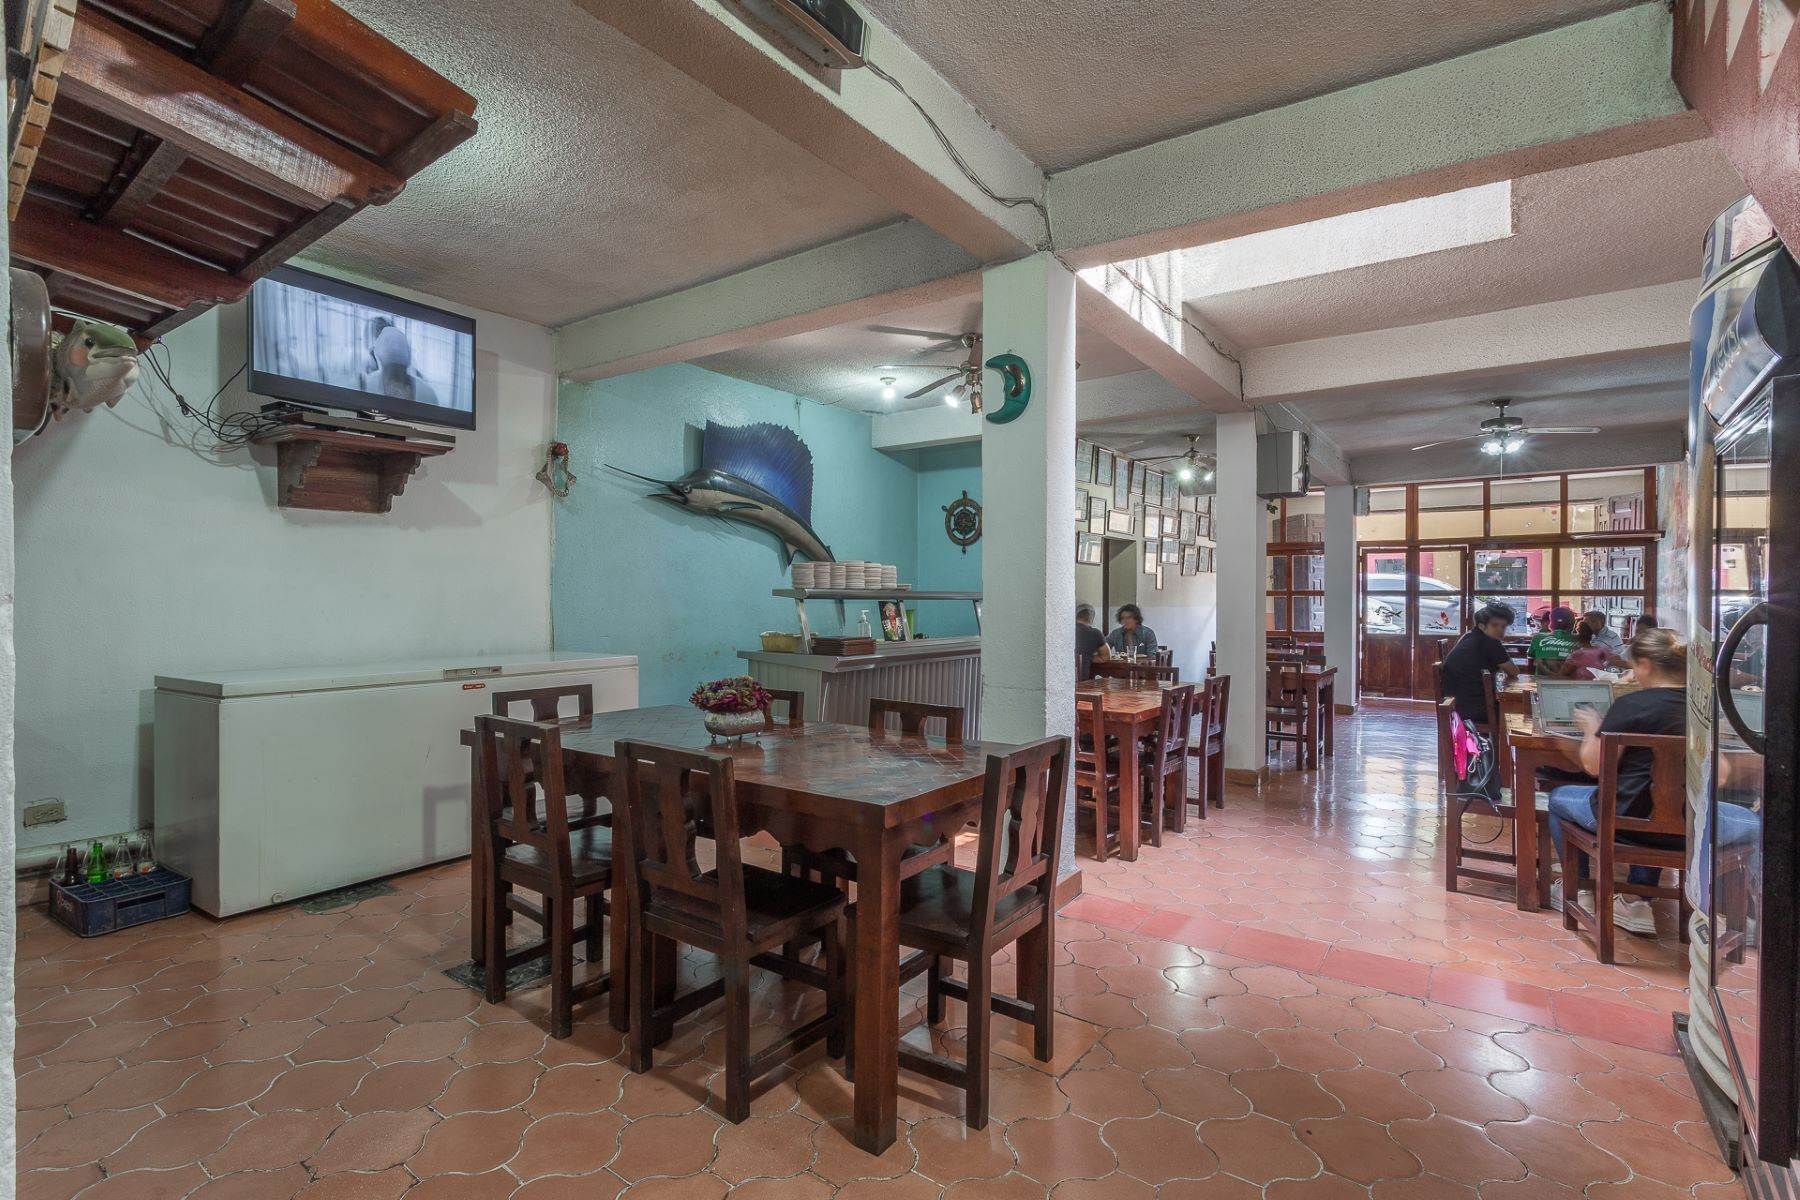 Property for Sale at El Caribe Canal 85 San Miguel De Allende, Guanajuato 37700 Mexico